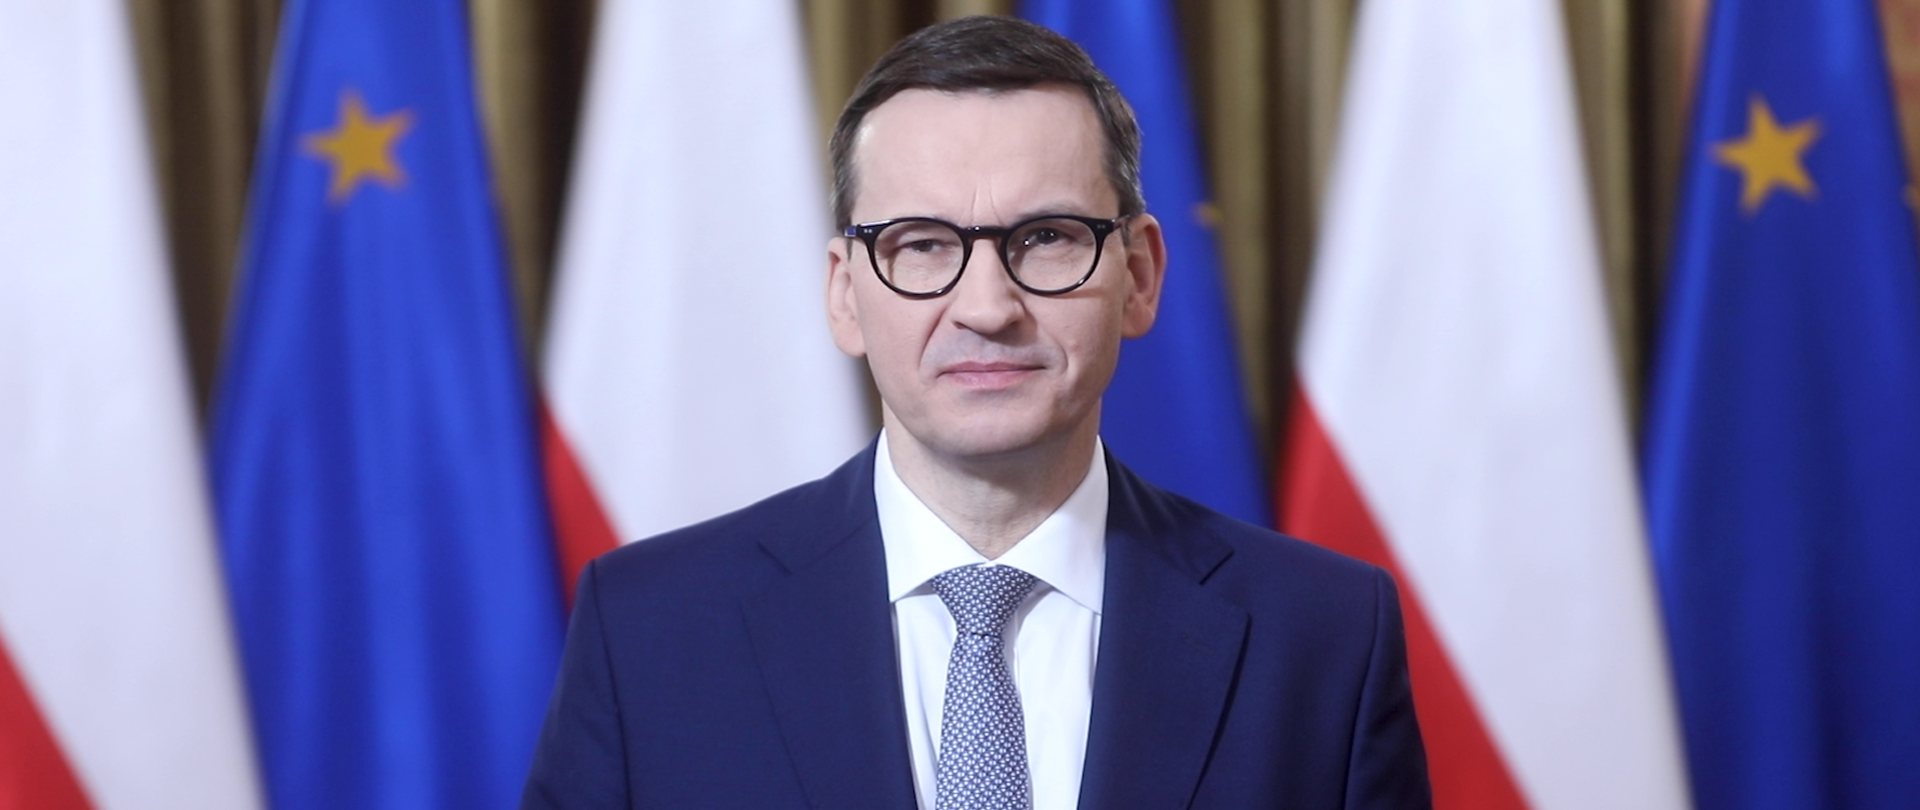 Prezes Rady Ministrów Mateusz Morawiecki na tle flag Polski i Unii Europejskiej